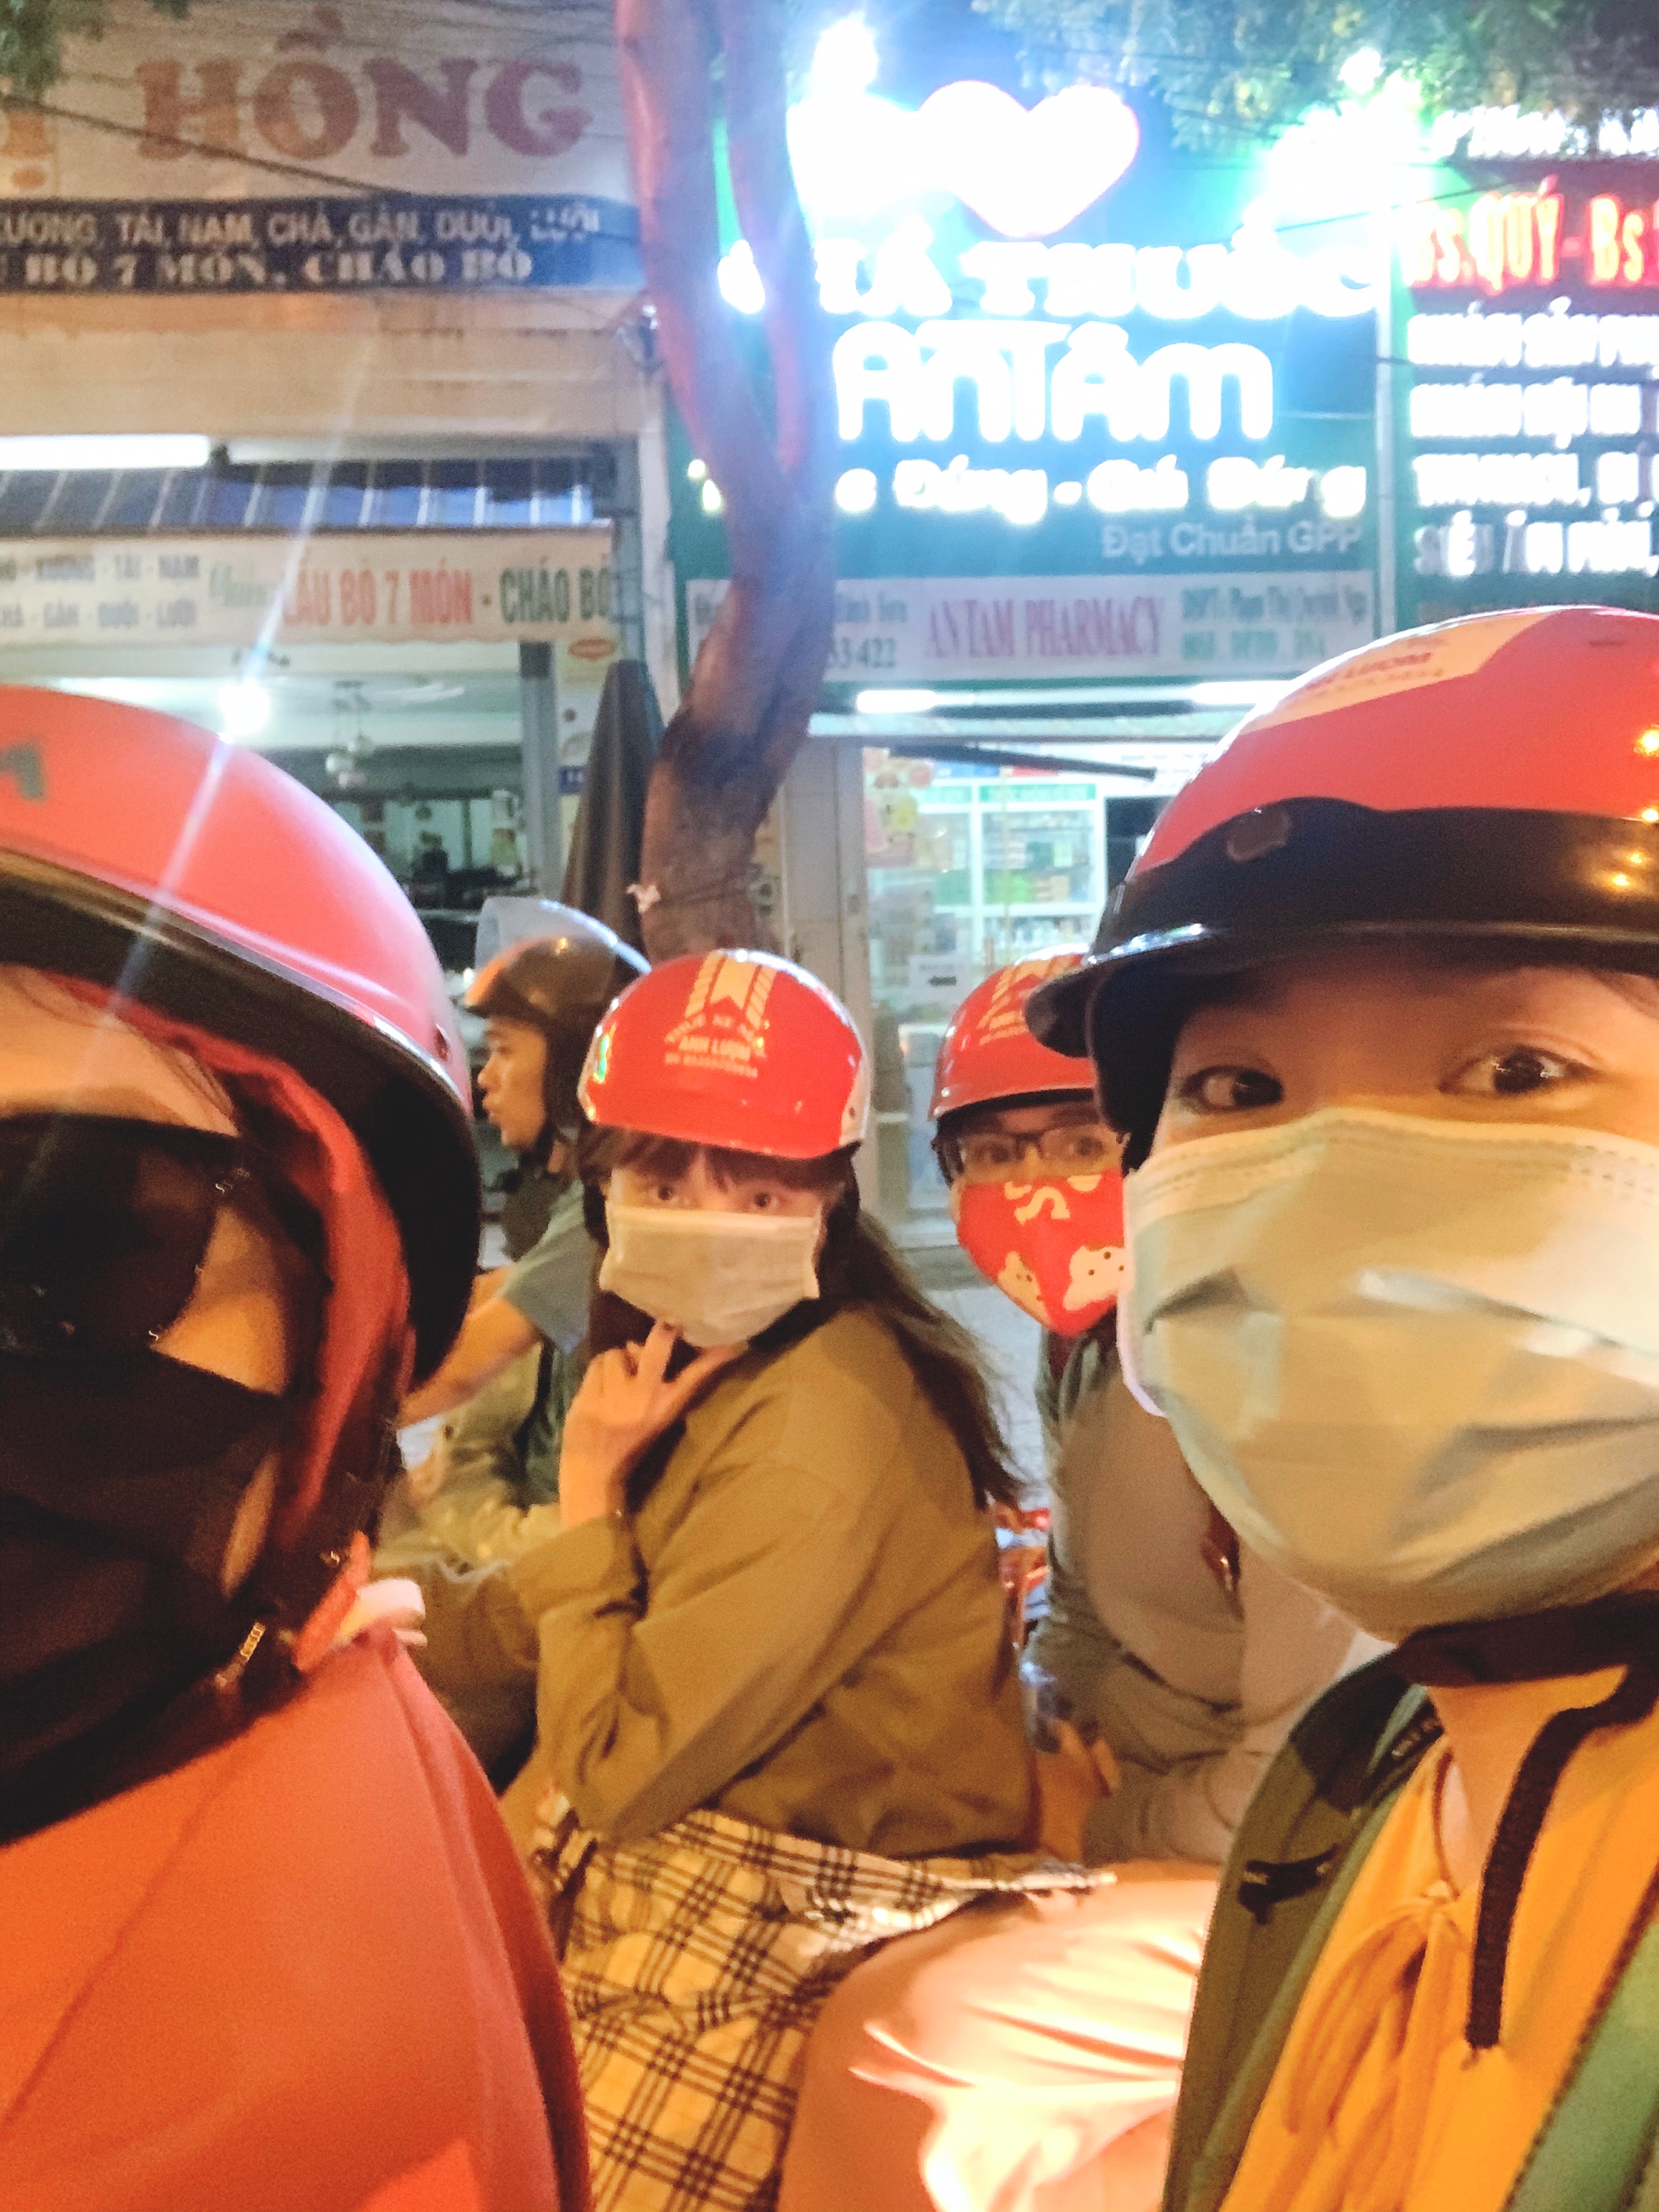 Du lịch Đà Nẵng - Hội An bằng xe máy